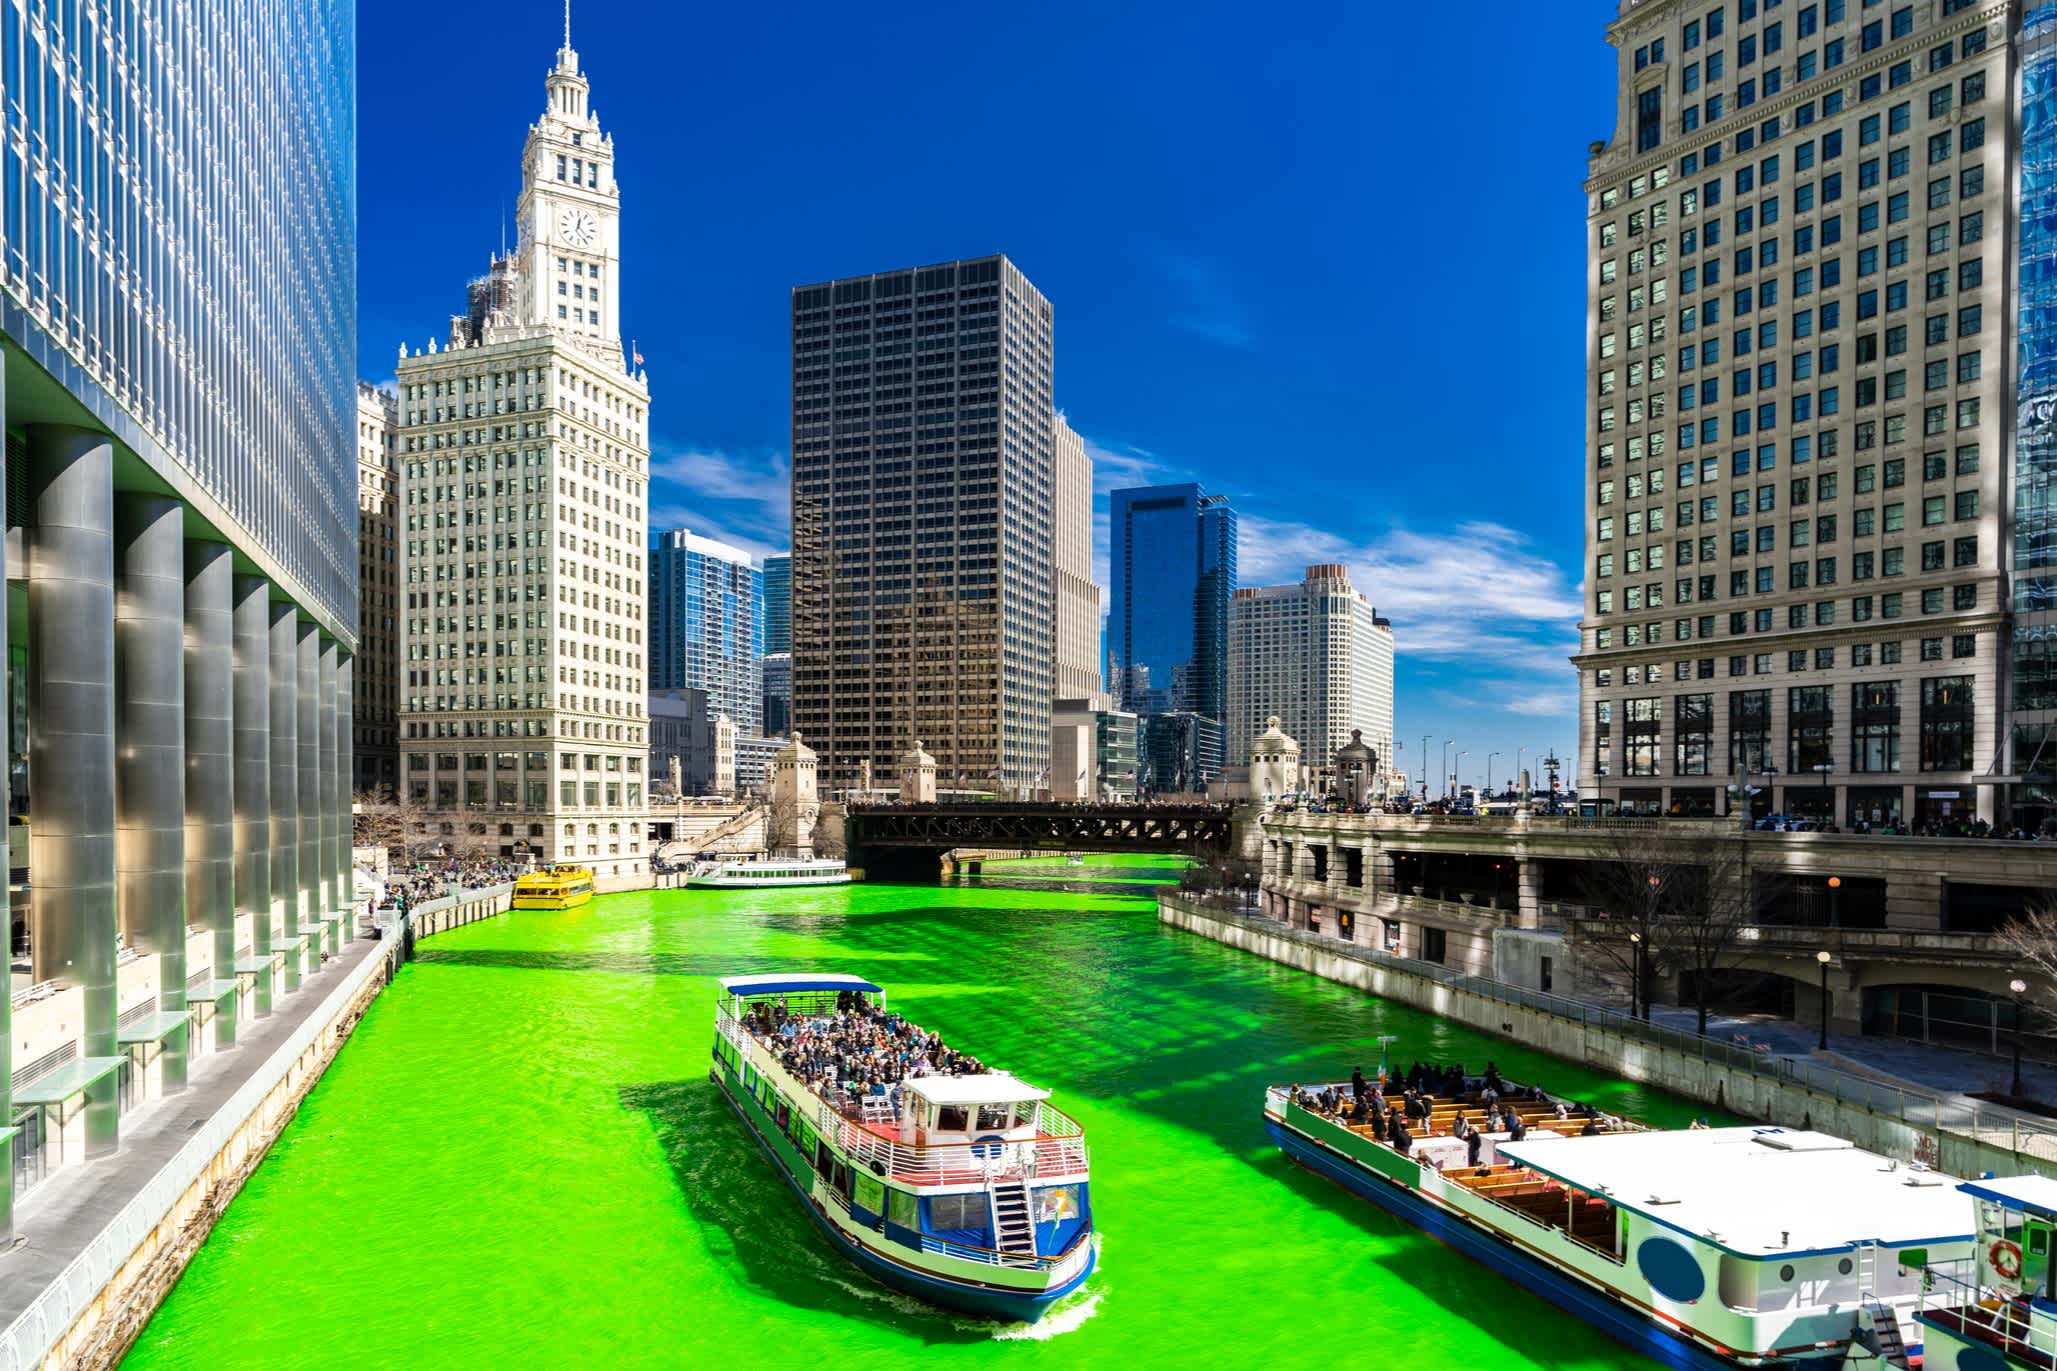 Zum St. Patrick's Day giftgrün gefärbter Chicago River